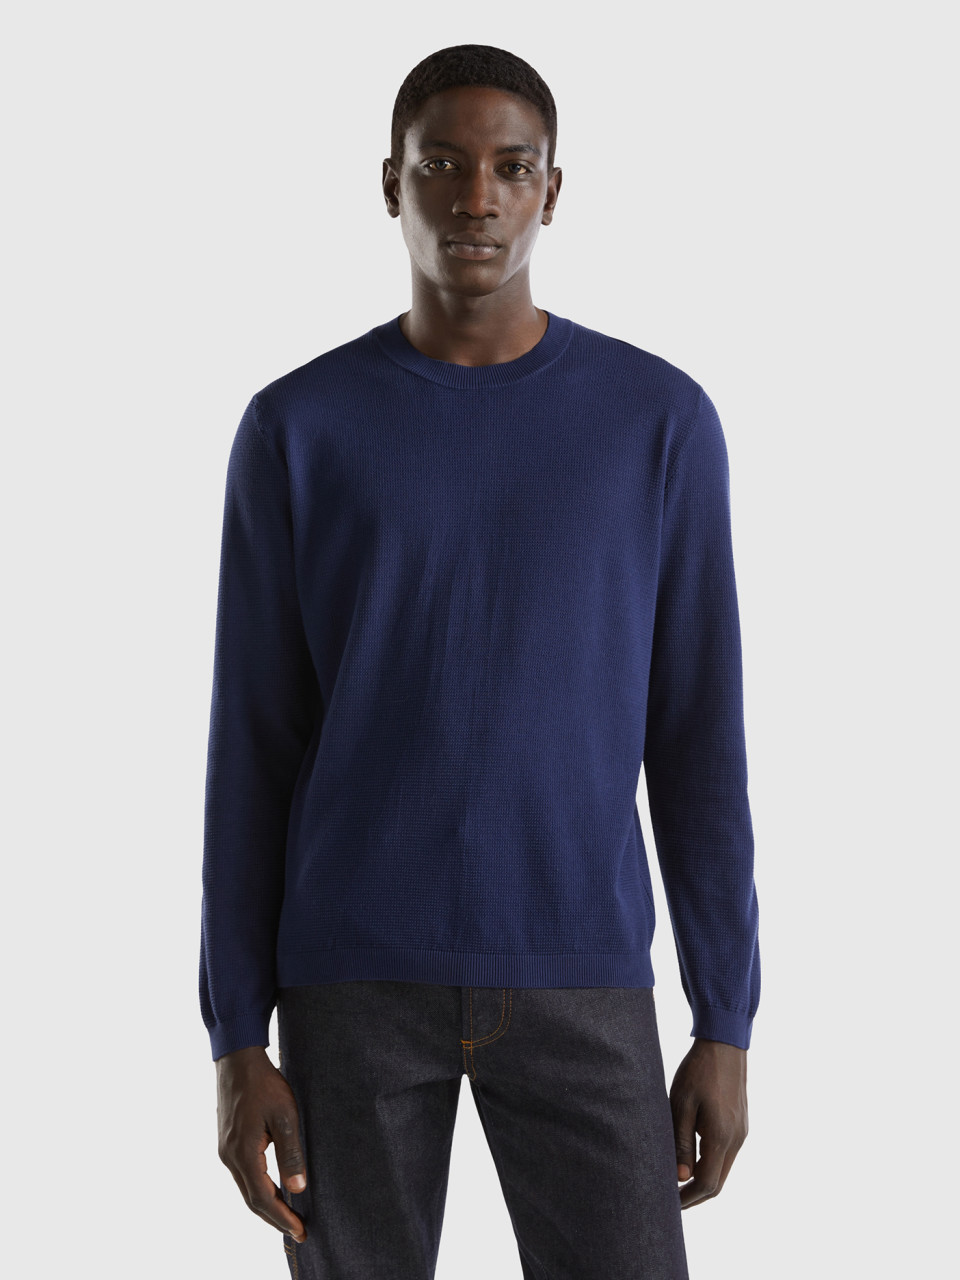 Benetton, 100% Cotton Crew Neck Sweater, Dark Blue, Men